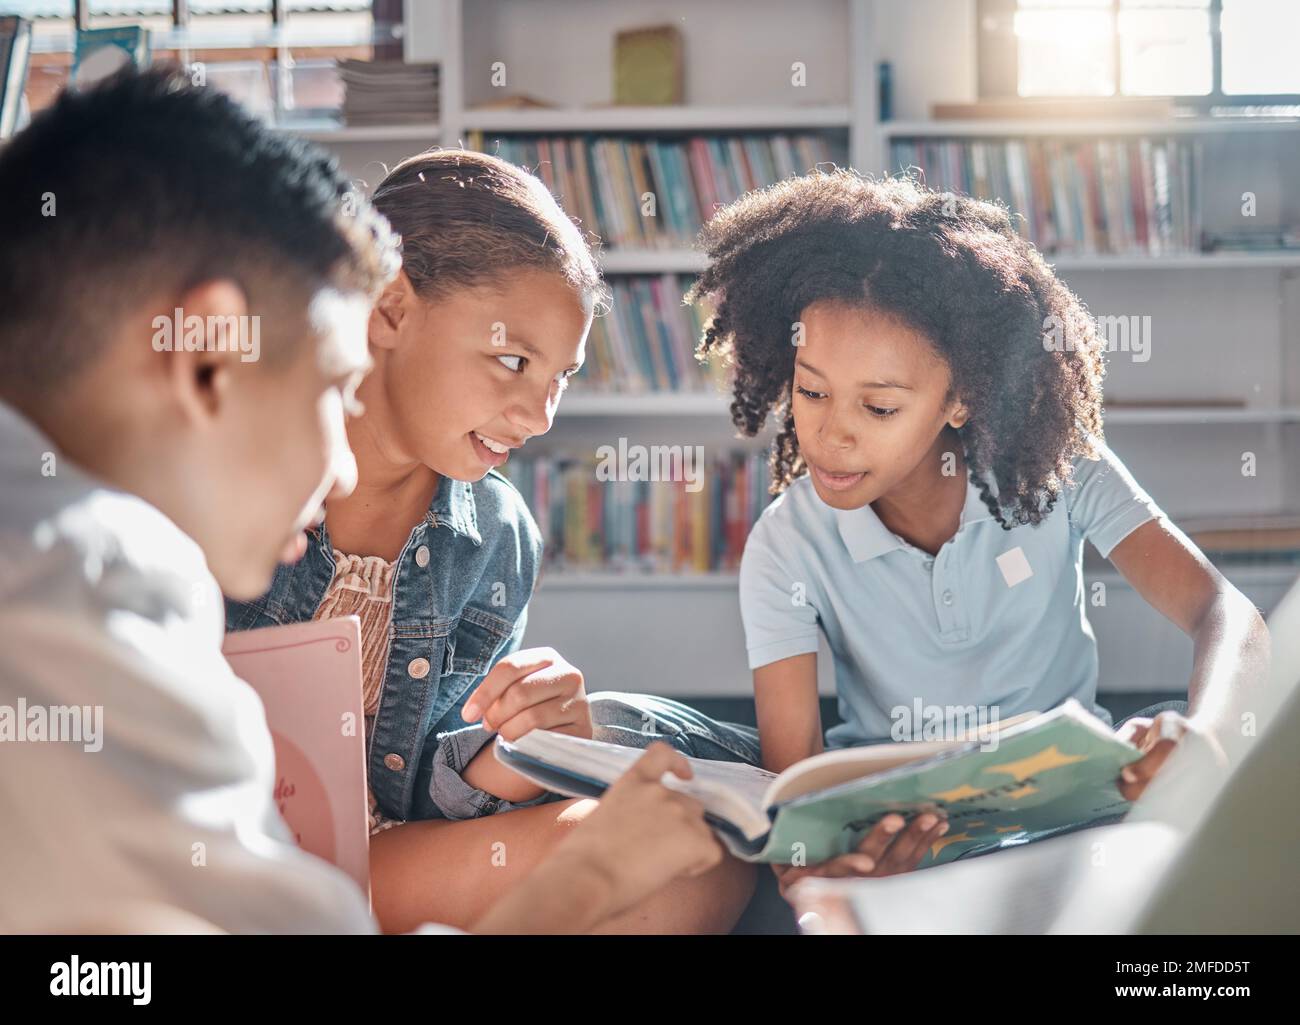 Bildung, Geschichtenerzählen oder Schüler, die in einer Bibliothek lesen, um sich in der Gruppe weiterzuentwickeln oder weiterzuentwickeln. Vielfalt, Kinder oder Kinder, die reden oder sprechen Stockfoto